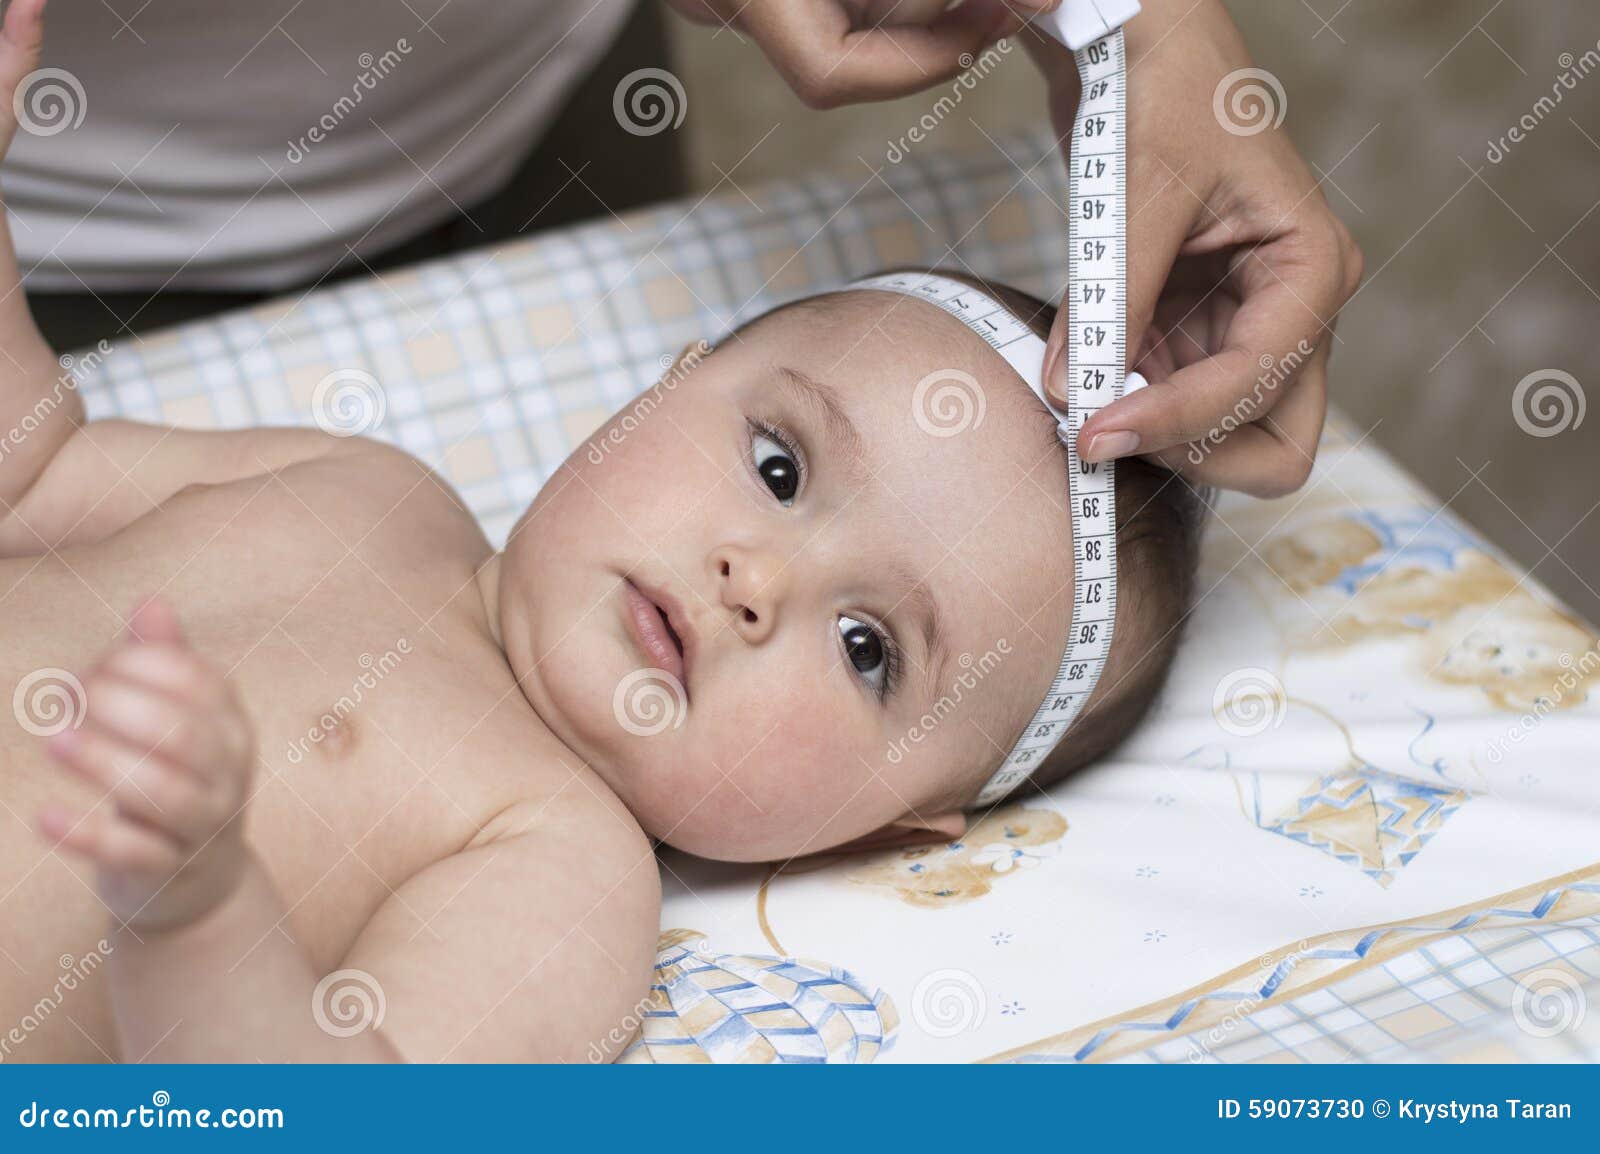 Большая окружность головы. Измерение головы новорожденного. Антропометрия новорожденного. Измерение окружности головы у новорожденных. Измерение окружности грудной клетки у детей.